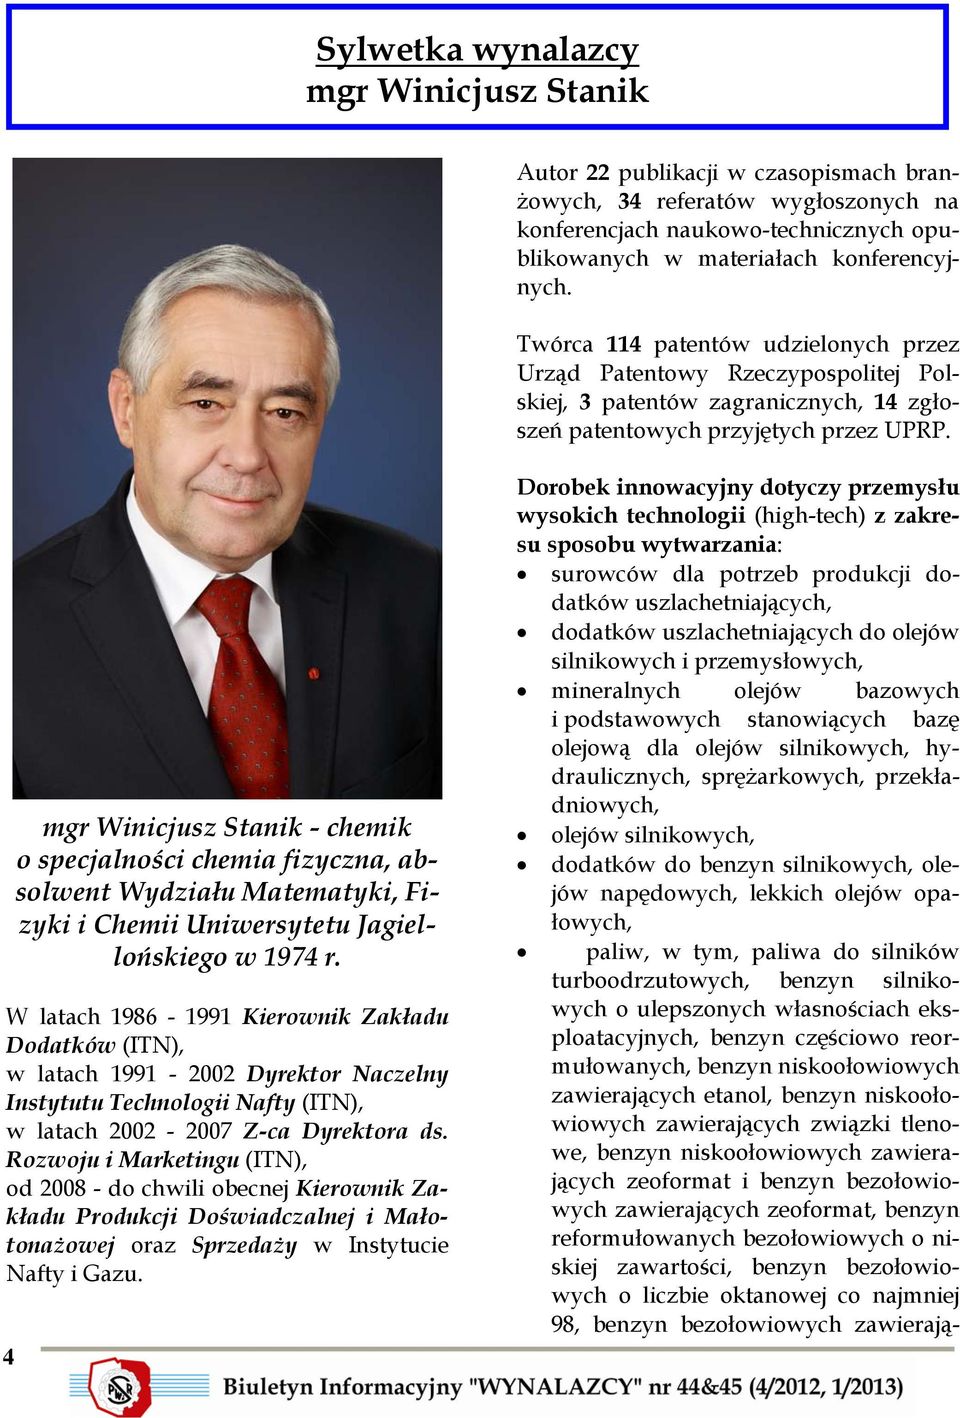 mgr Winicjusz Stanik - chemik o specjalności chemia fizyczna, absolwent Wydziału Matematyki, Fizyki i Chemii Uniwersytetu Jagiellońskiego w 1974 r.